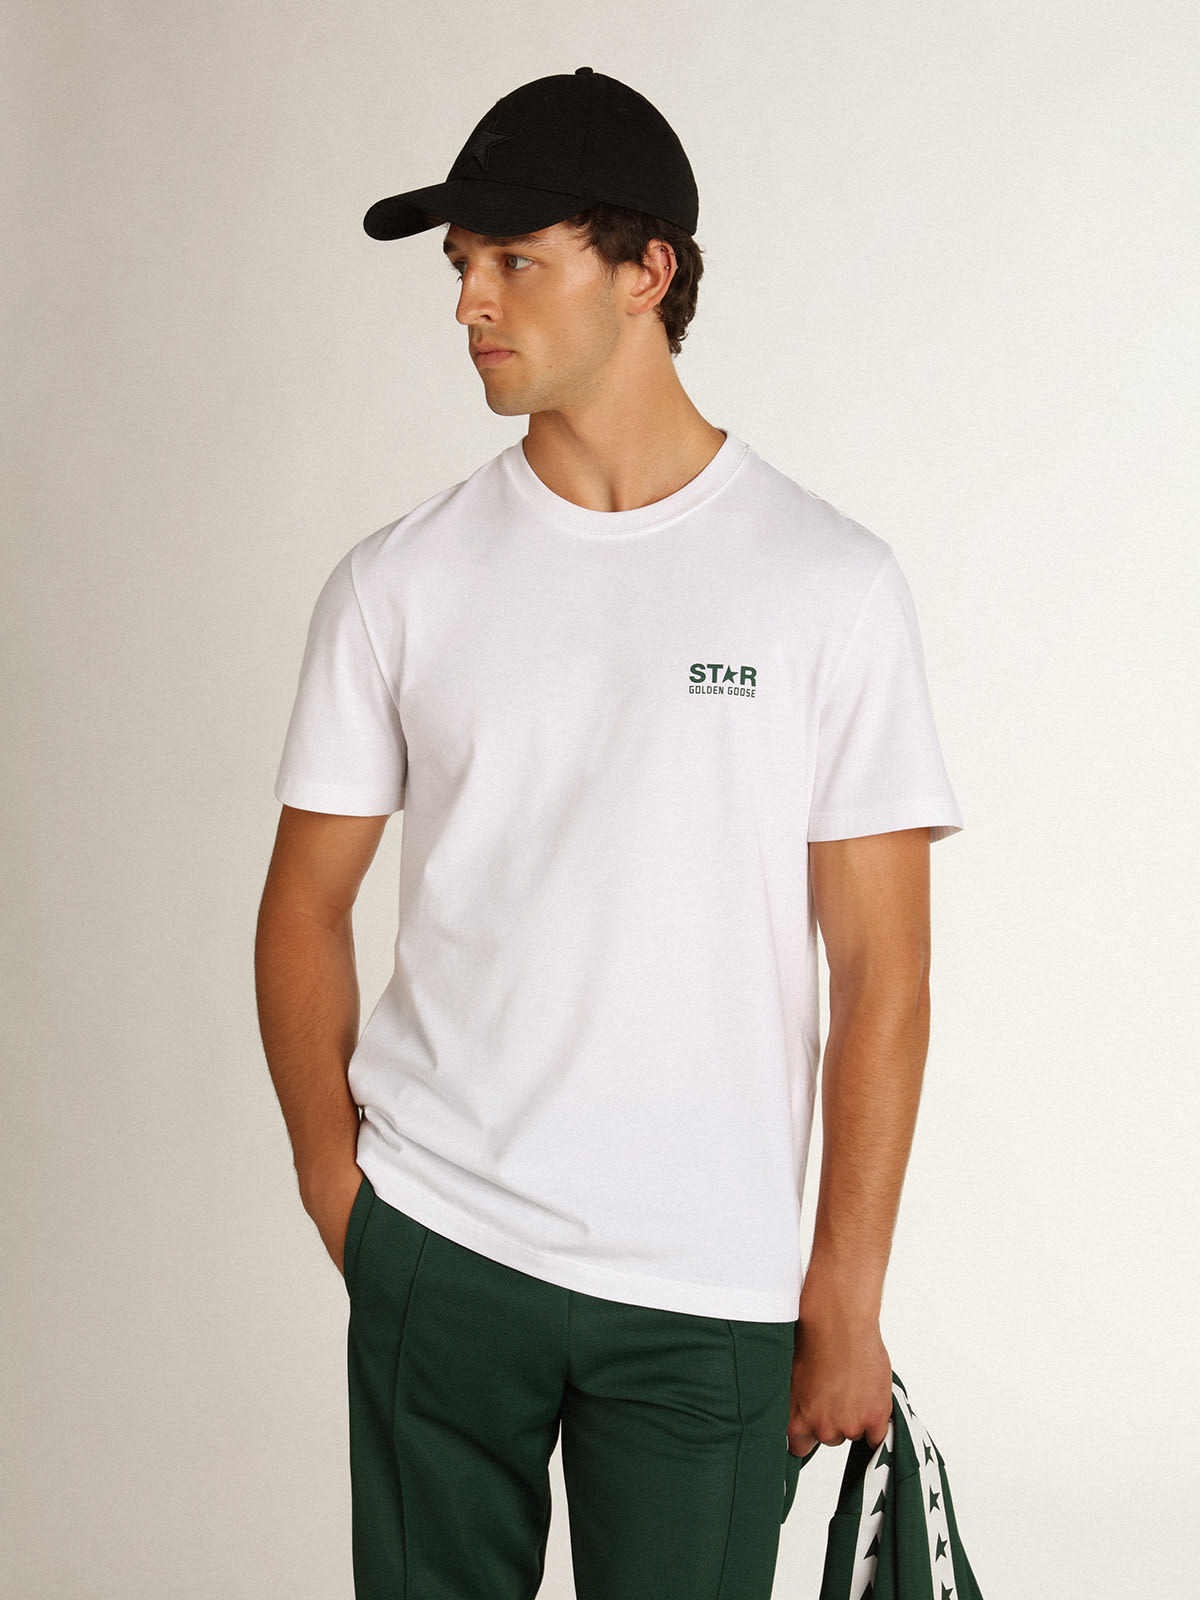 Golden Goose - T-shirt bianca Collezione Star con logo e stella verdi a contrasto in 